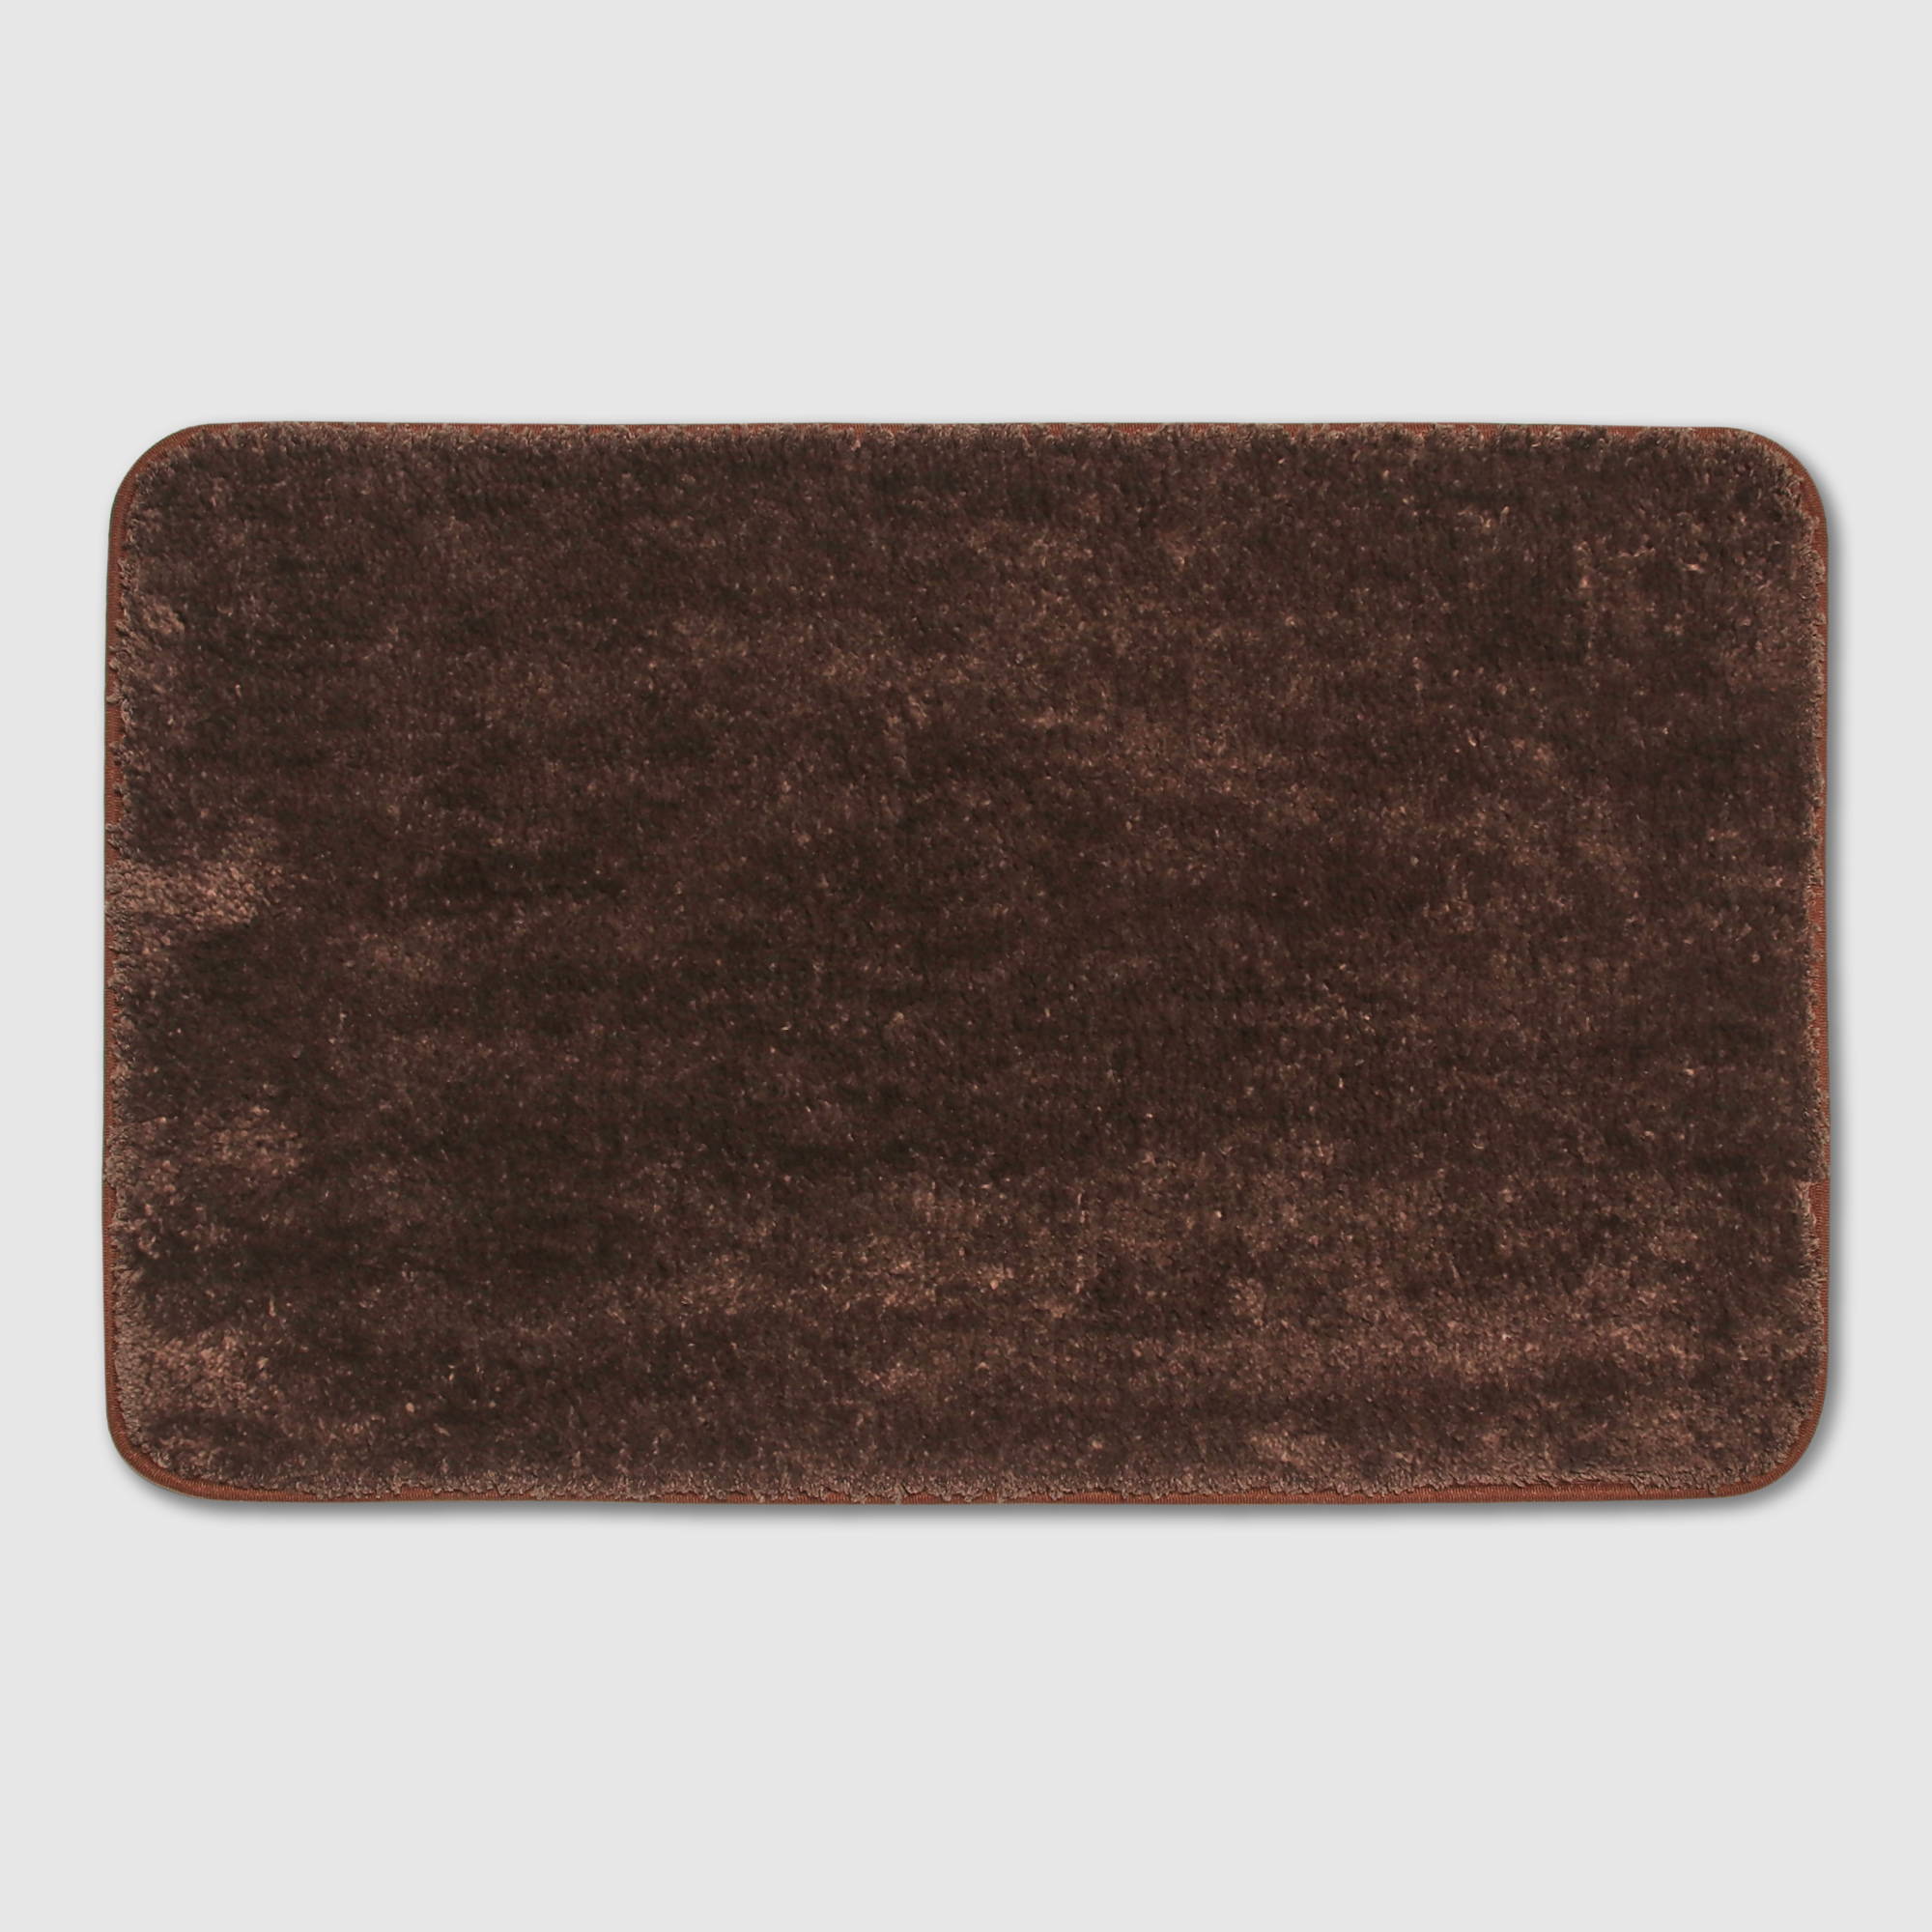 коврик придверный x y carpet оранжевый 50х80 см Коврик Silverstone Carpet коричневый 50х80 см